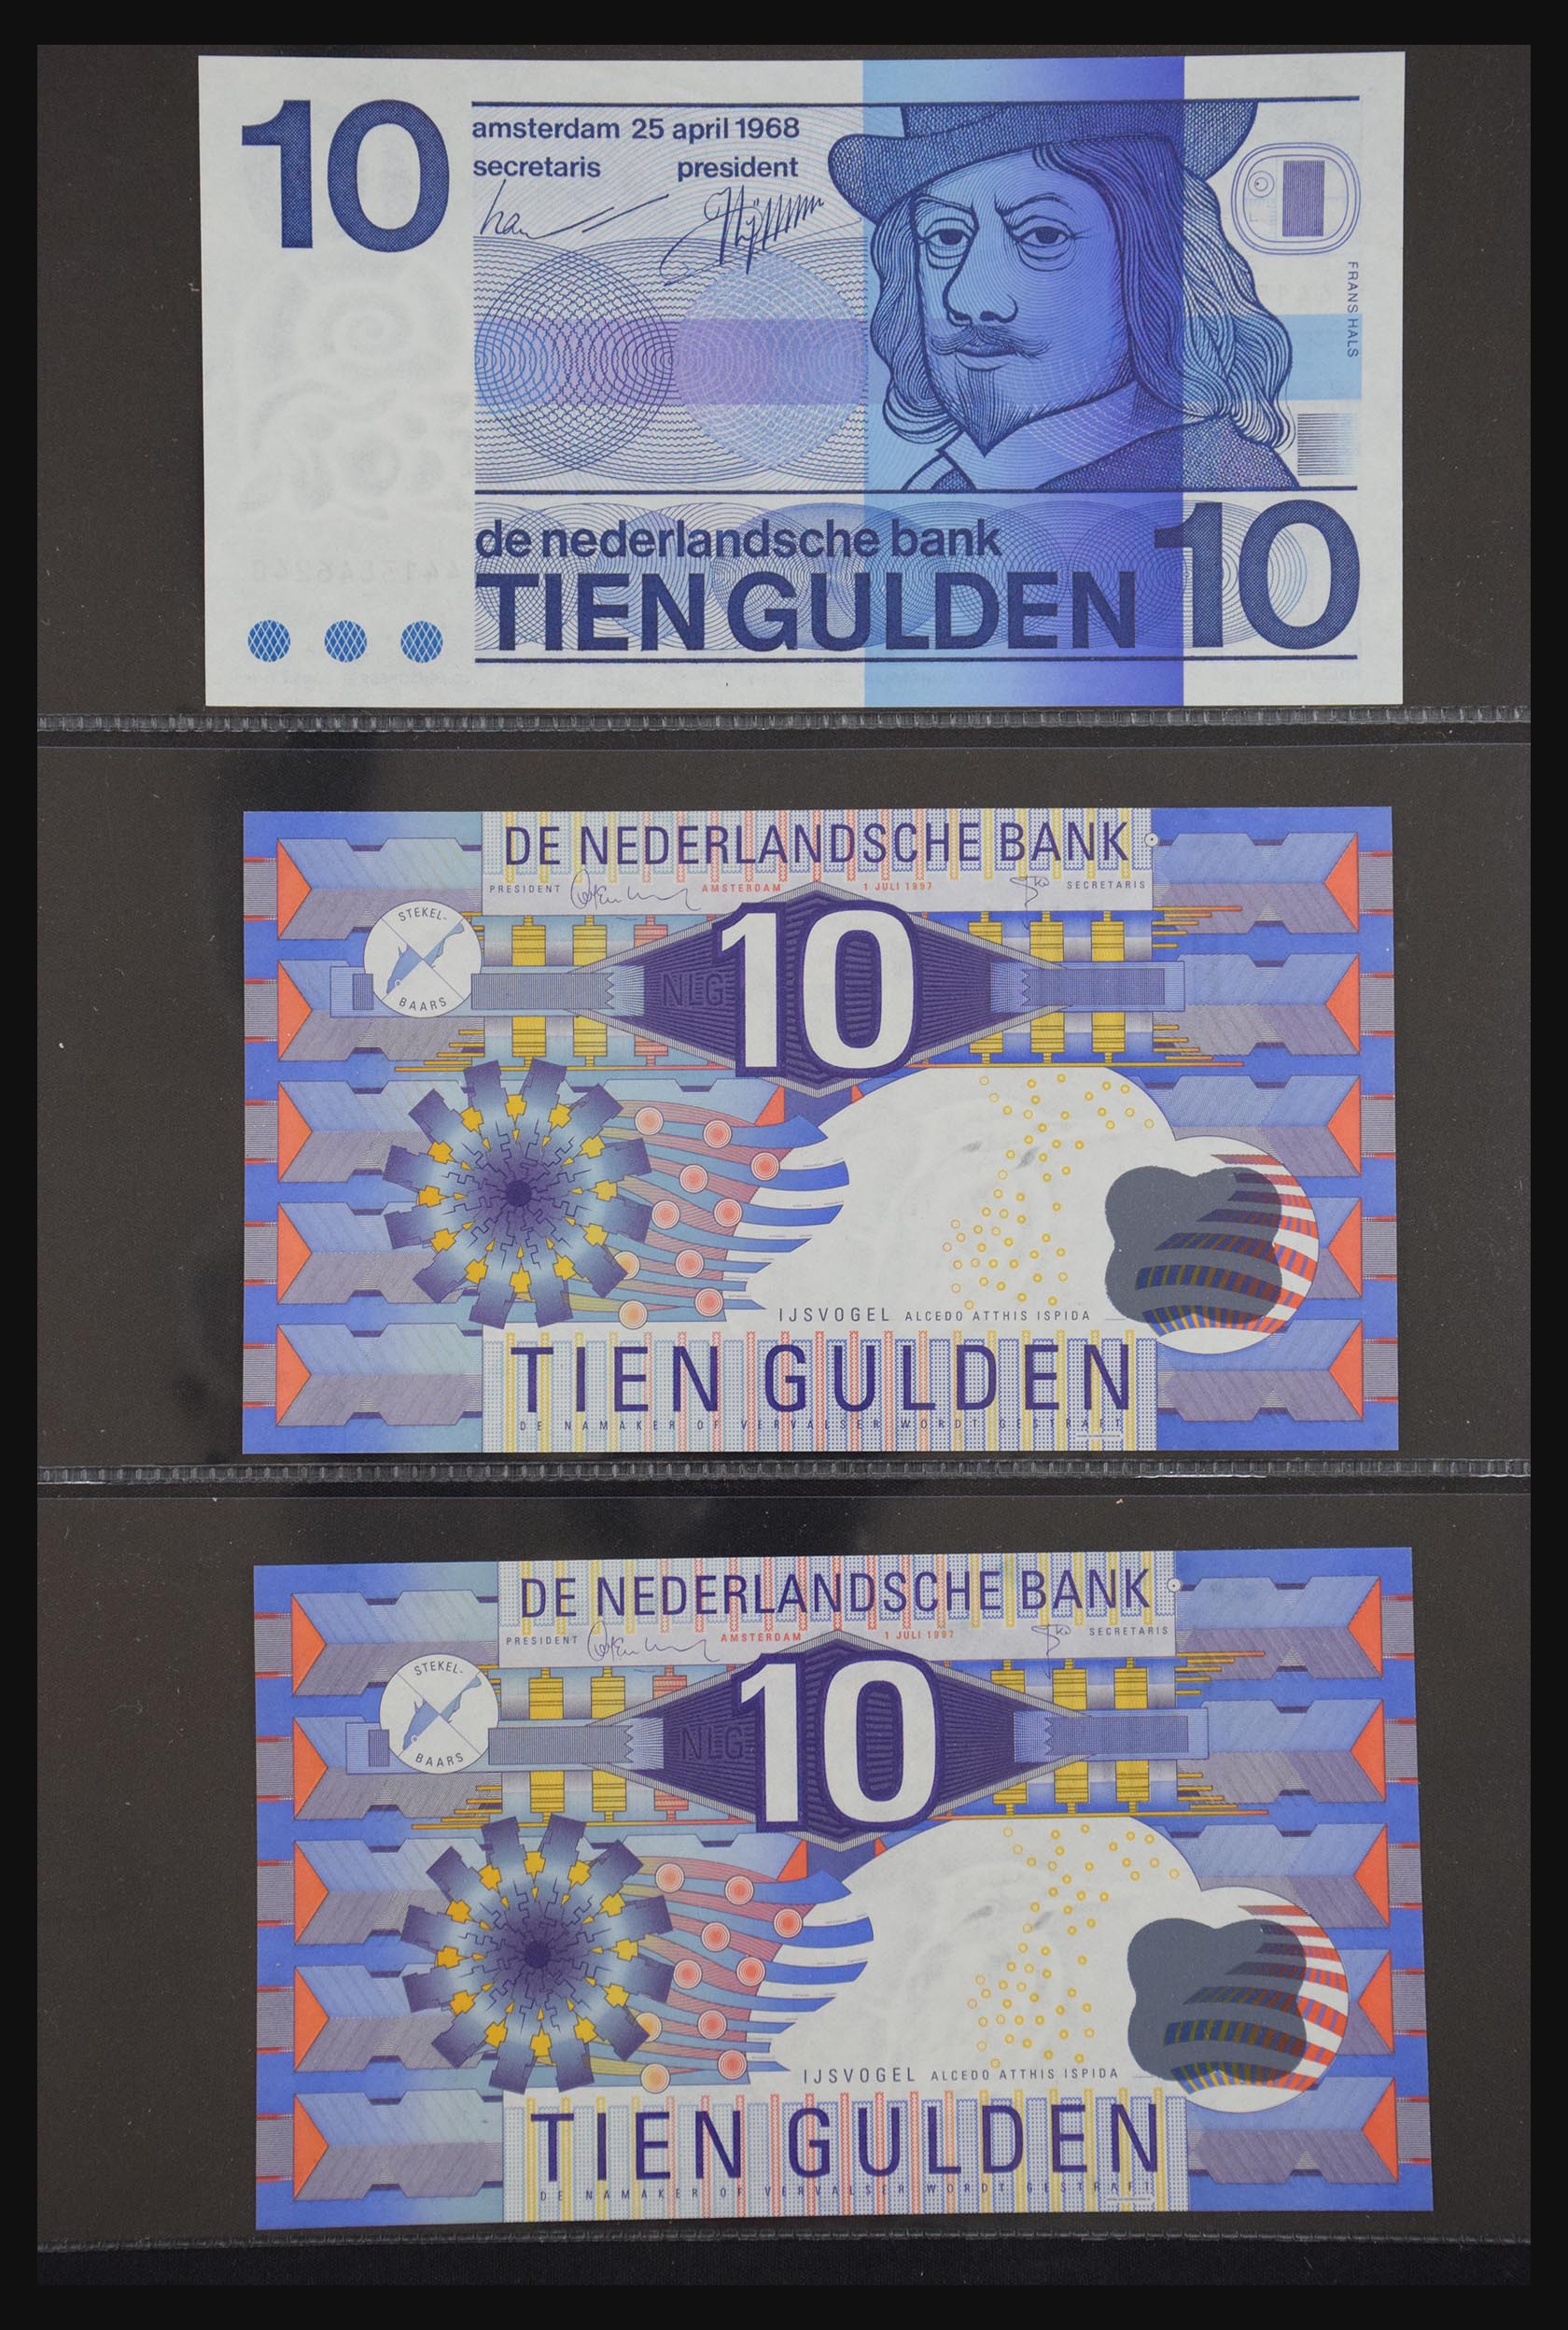 29404 023 - 29404 Netherlands banknotes 1924-1997.